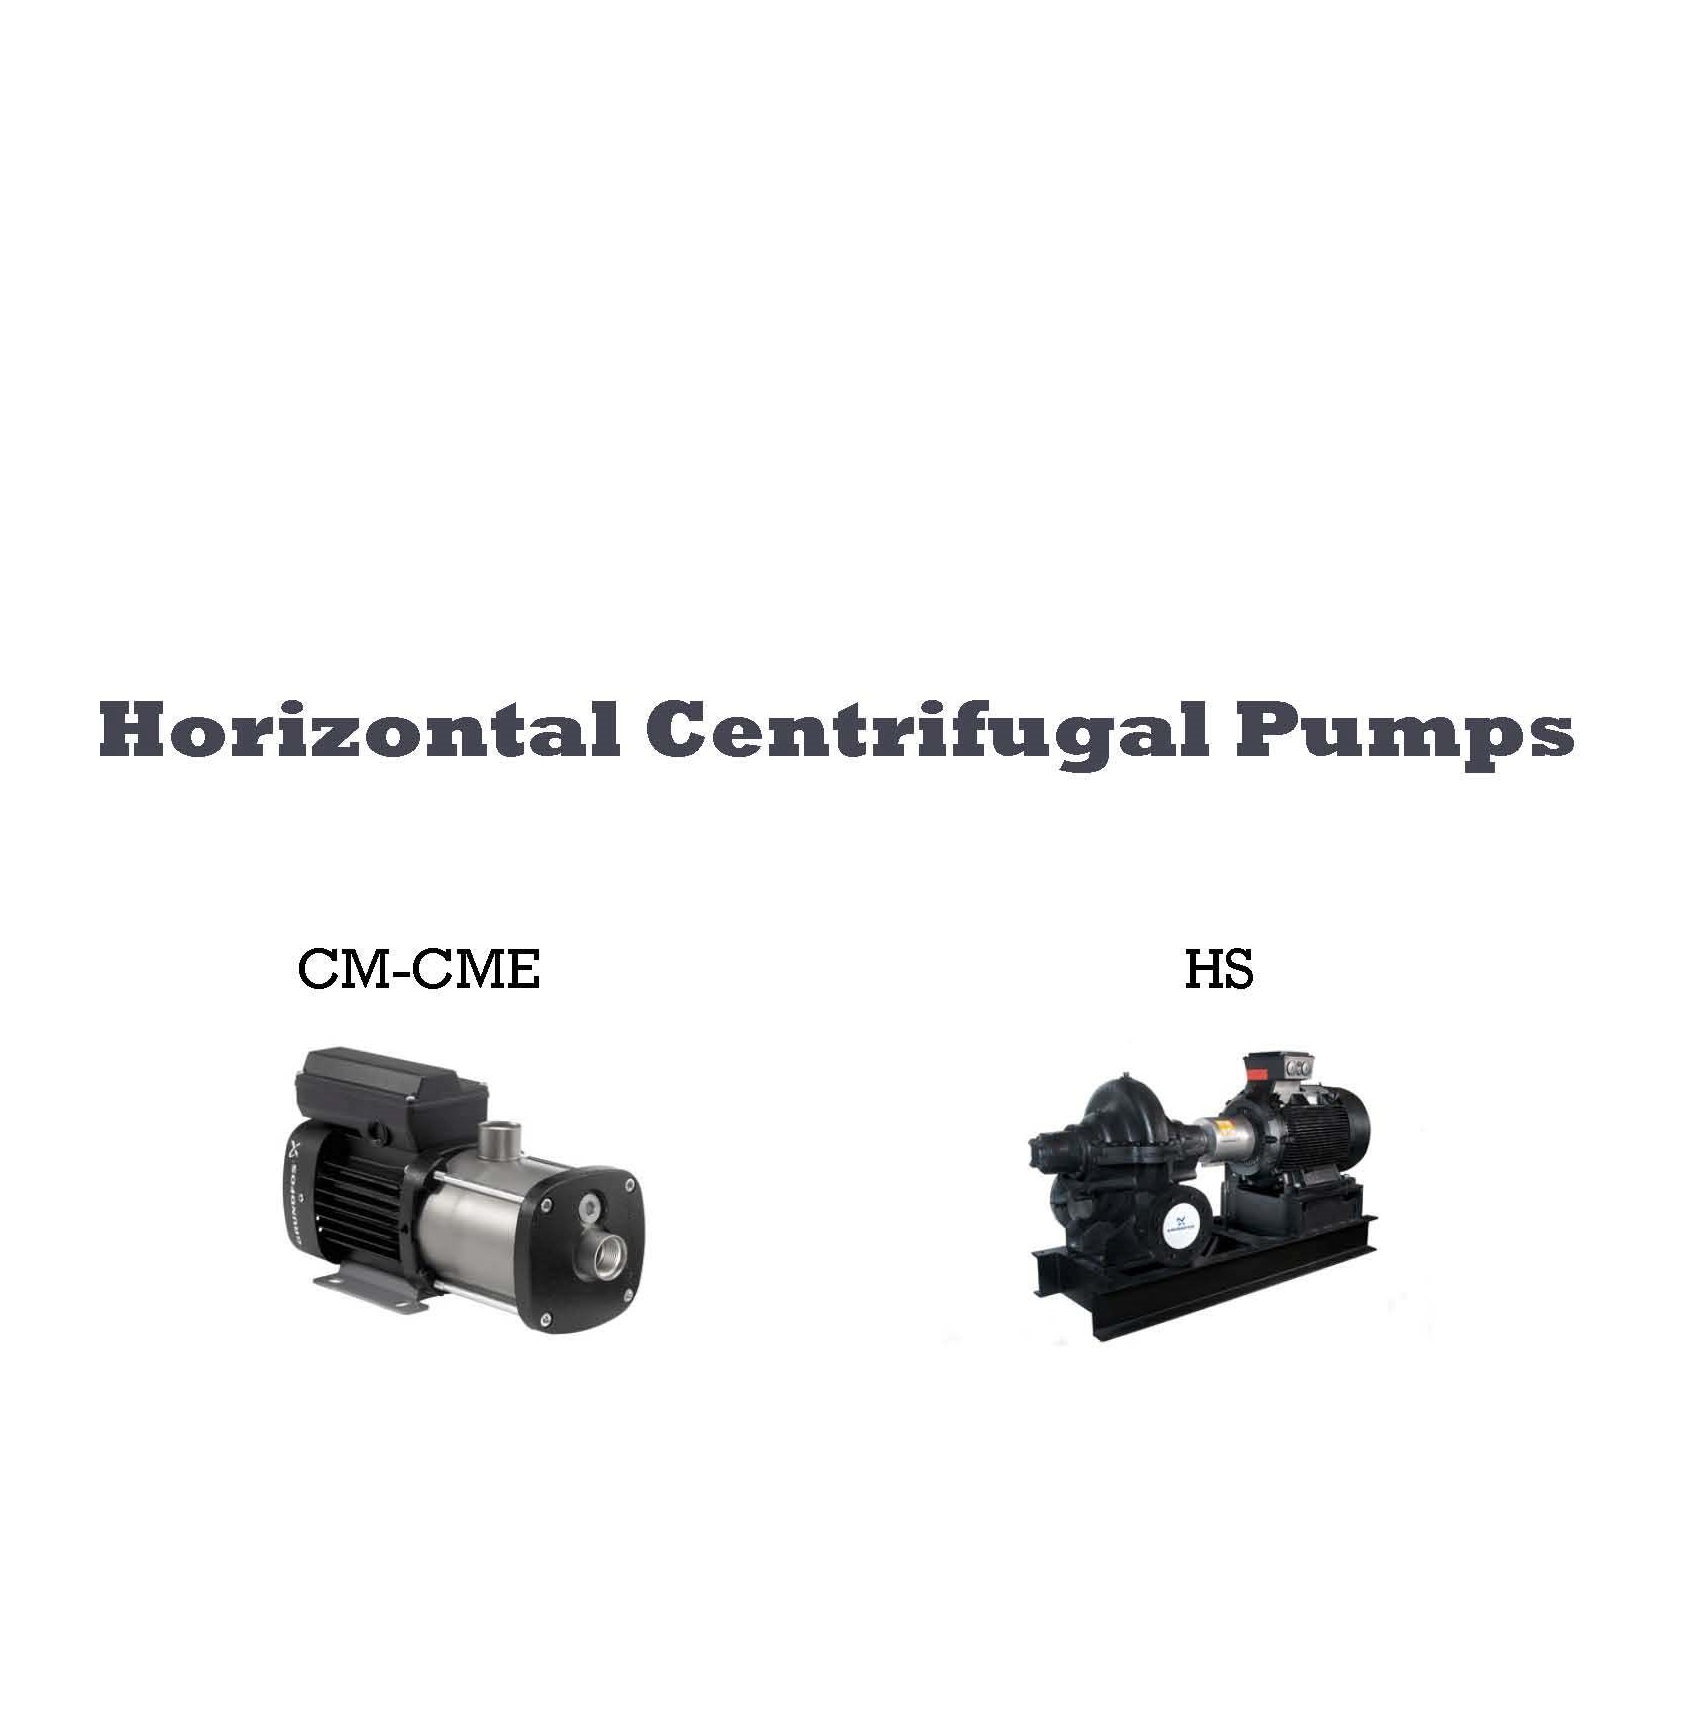 Horizontal Centrifugal Pumps